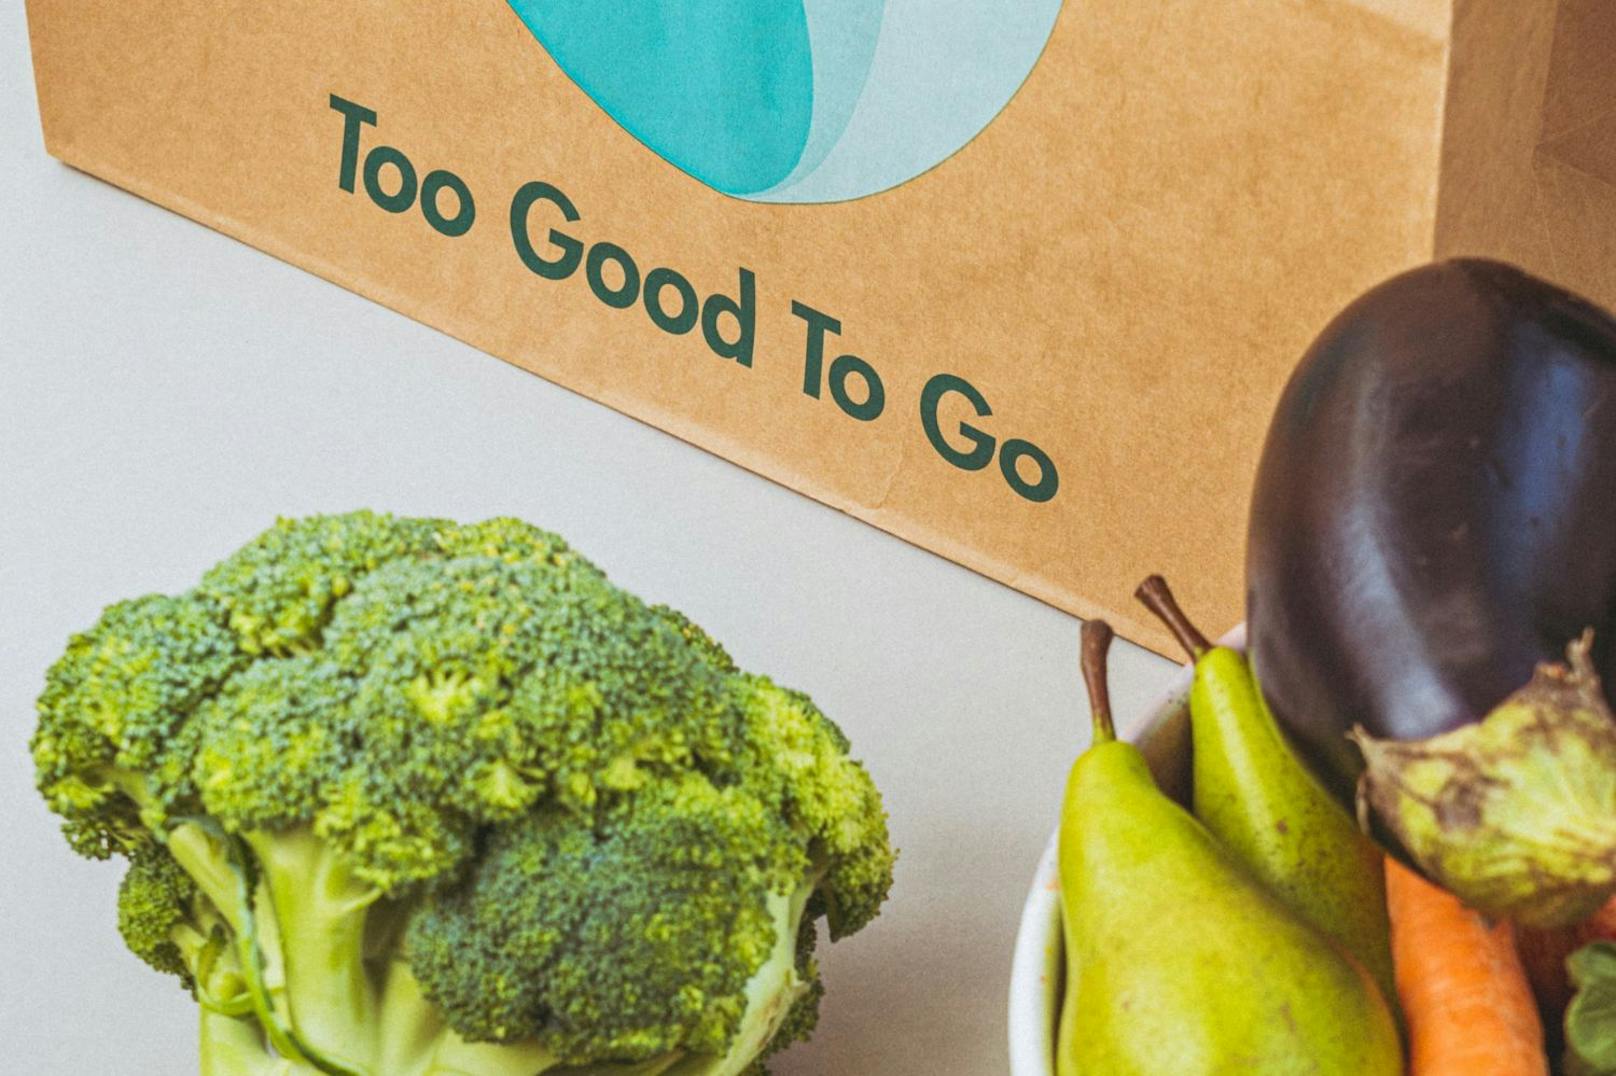 Viele Konzerne und Restaurants testeten die App bzw. sind Partner von "Too Good to Go"